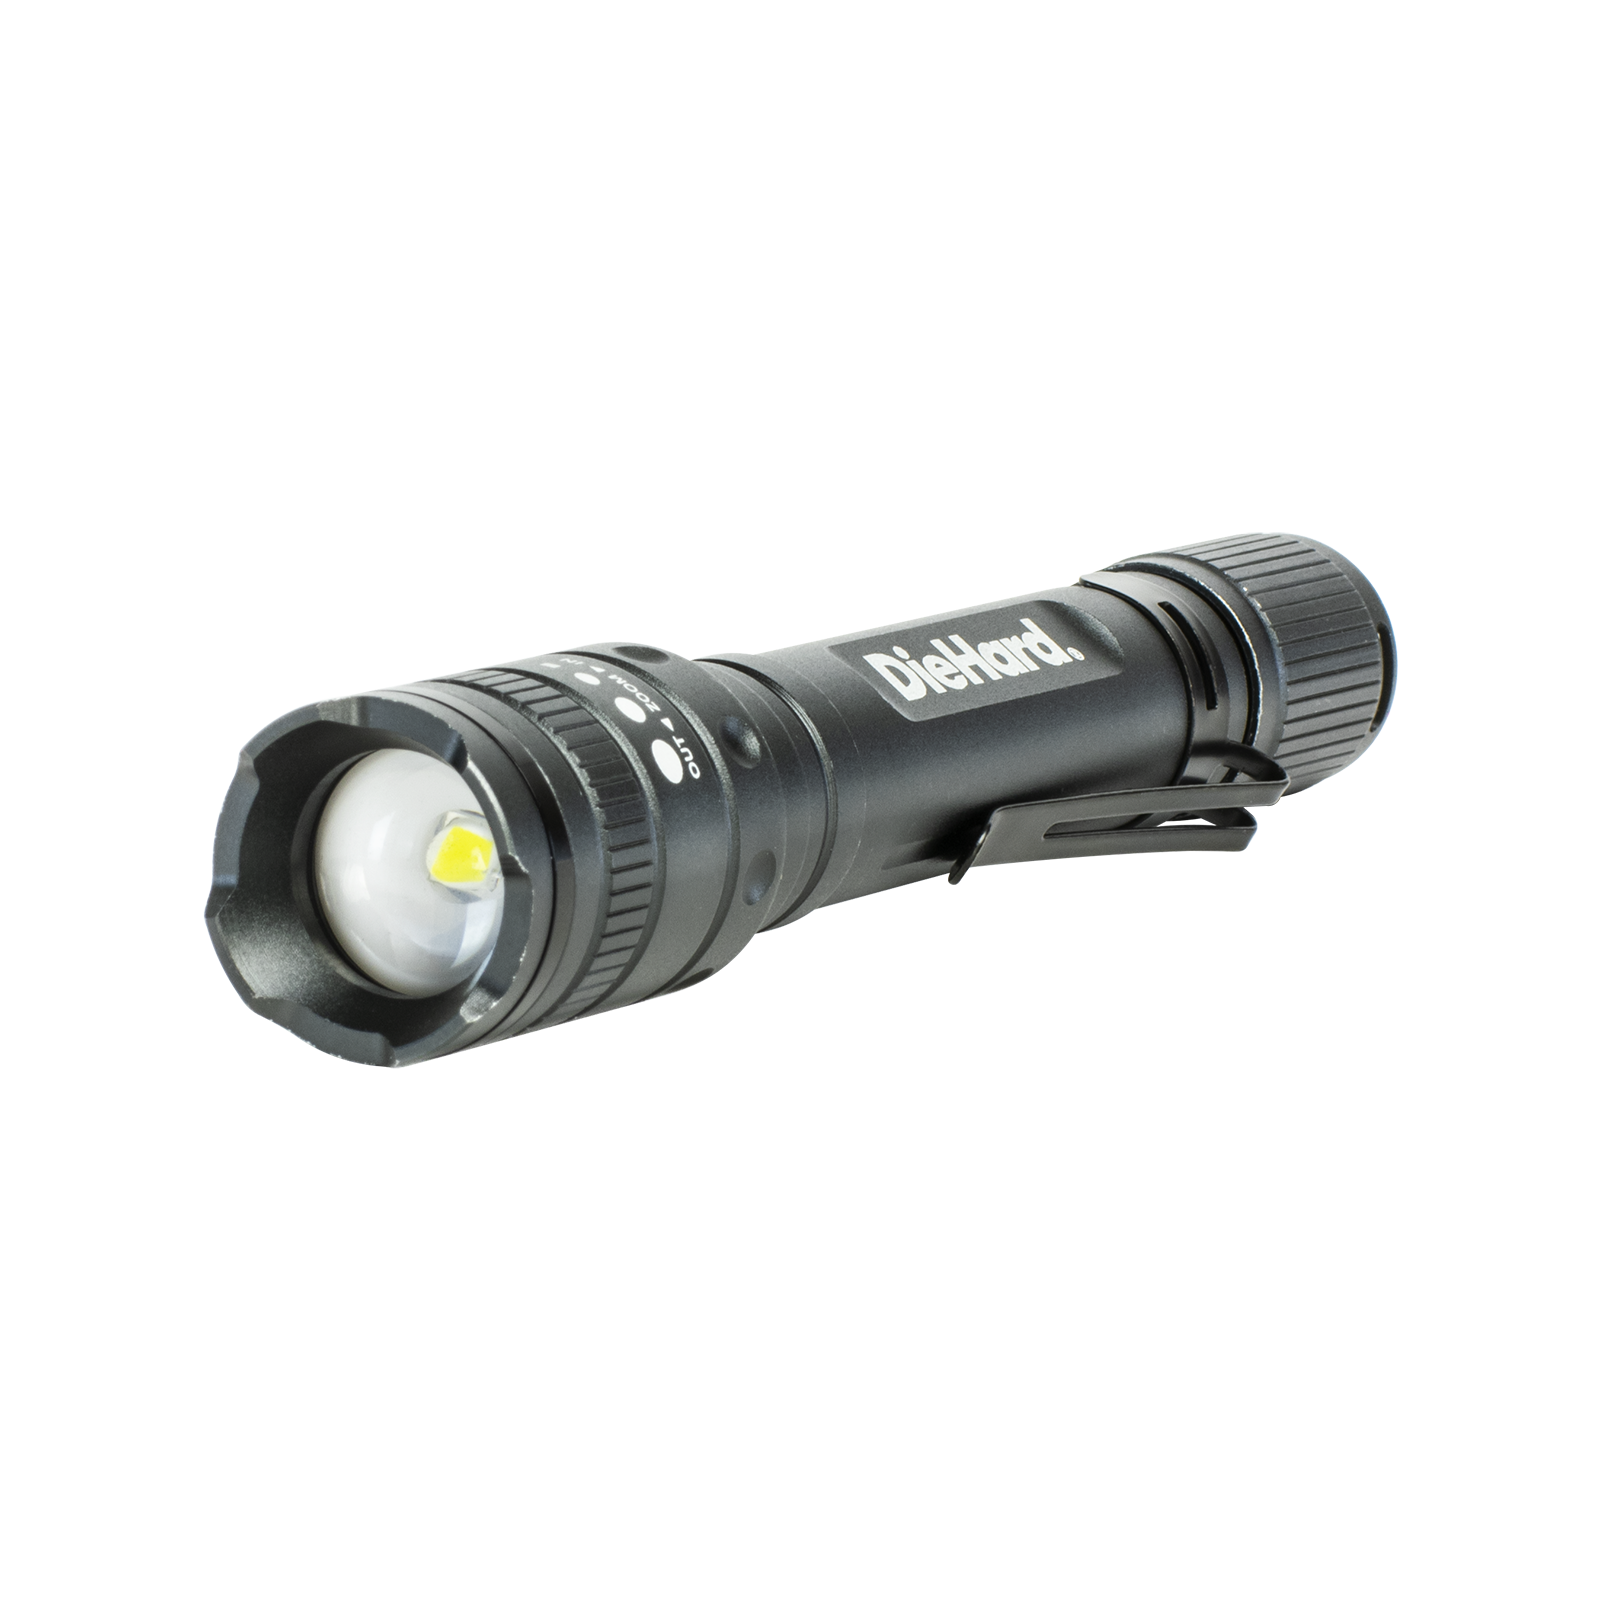 DieHard 270 Lumen 2AA Aluminum Twist Focus Flashlight